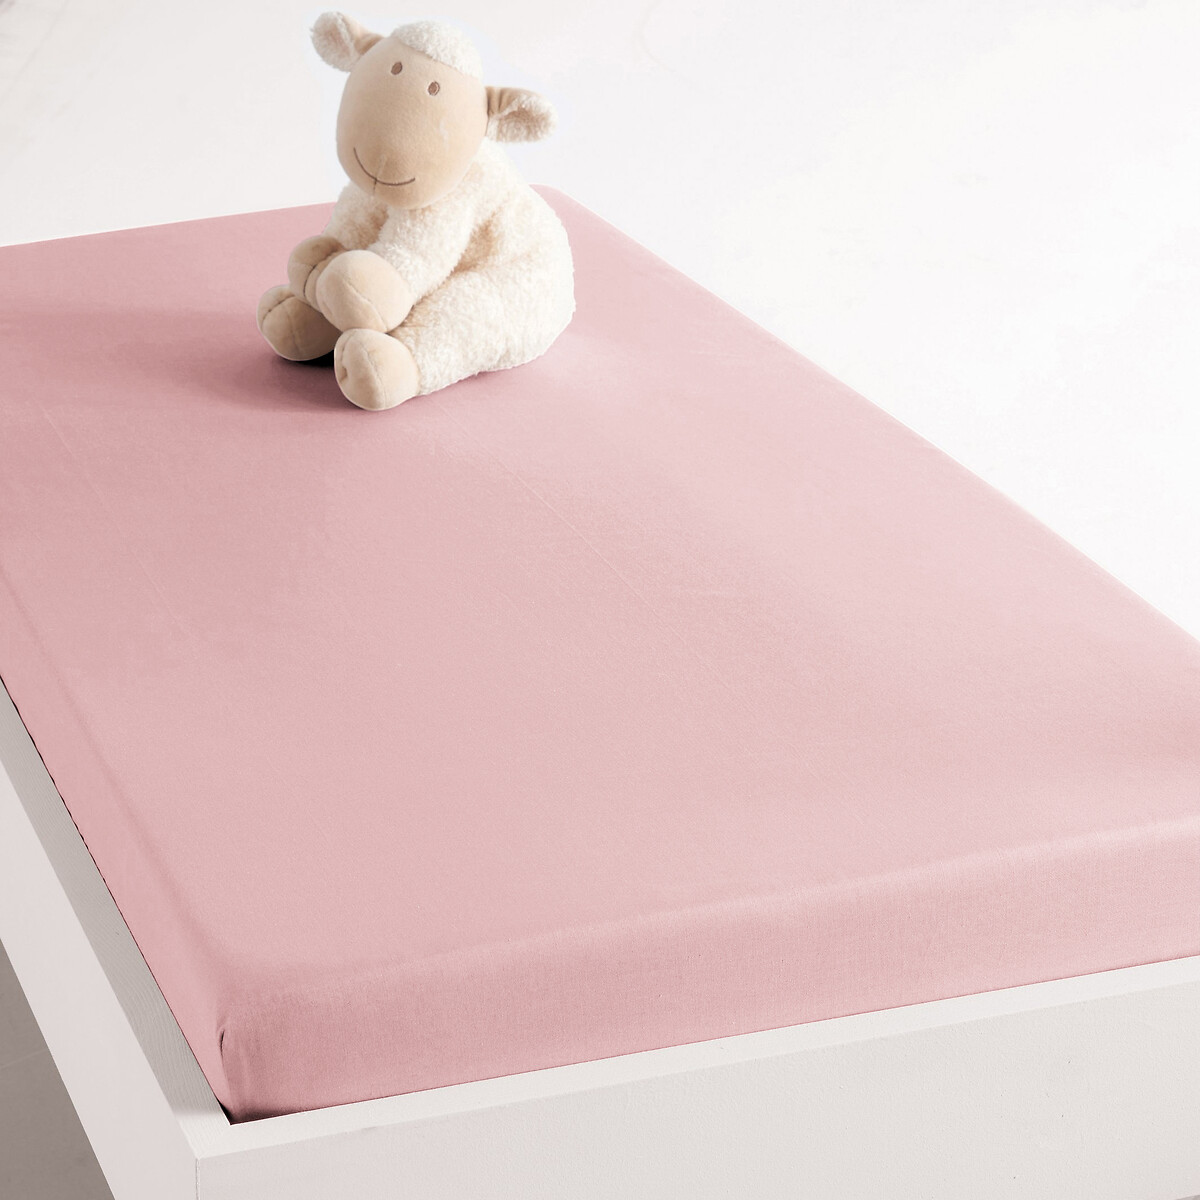 Натяжная простыня Для детской кровати Scenario 80 x 190 см розовый